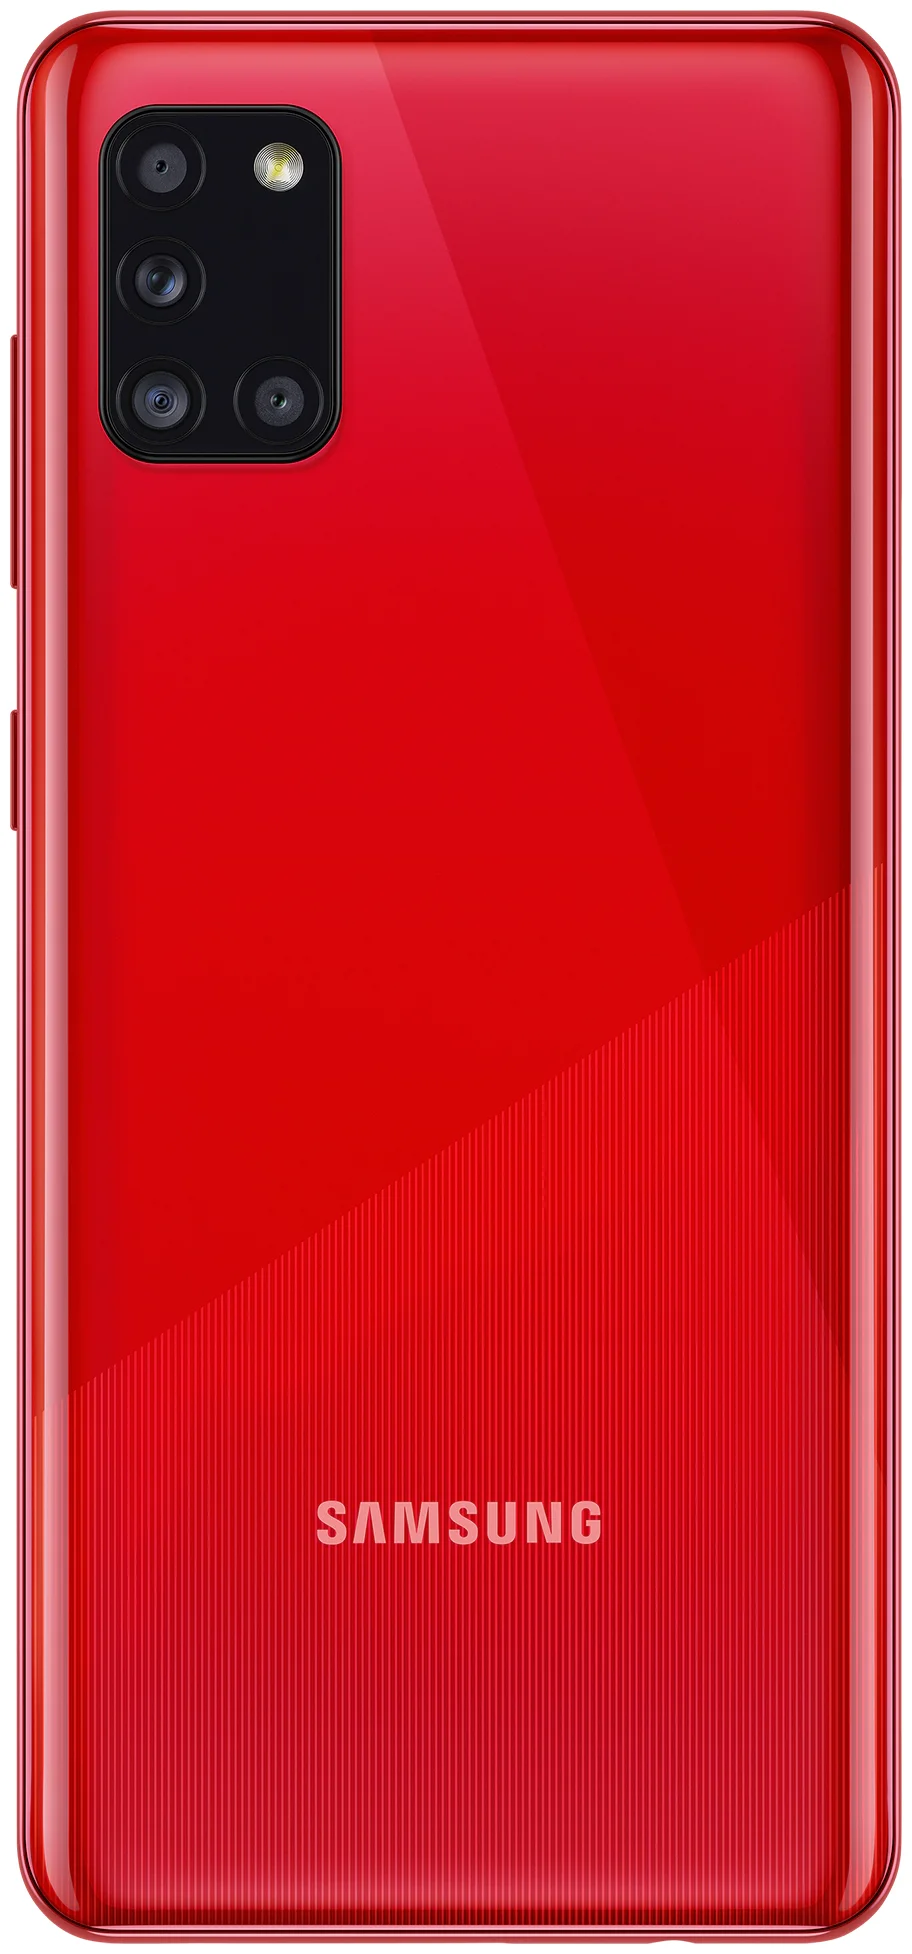 Samsung Galaxy A31 64GB - операционная система: Android 10